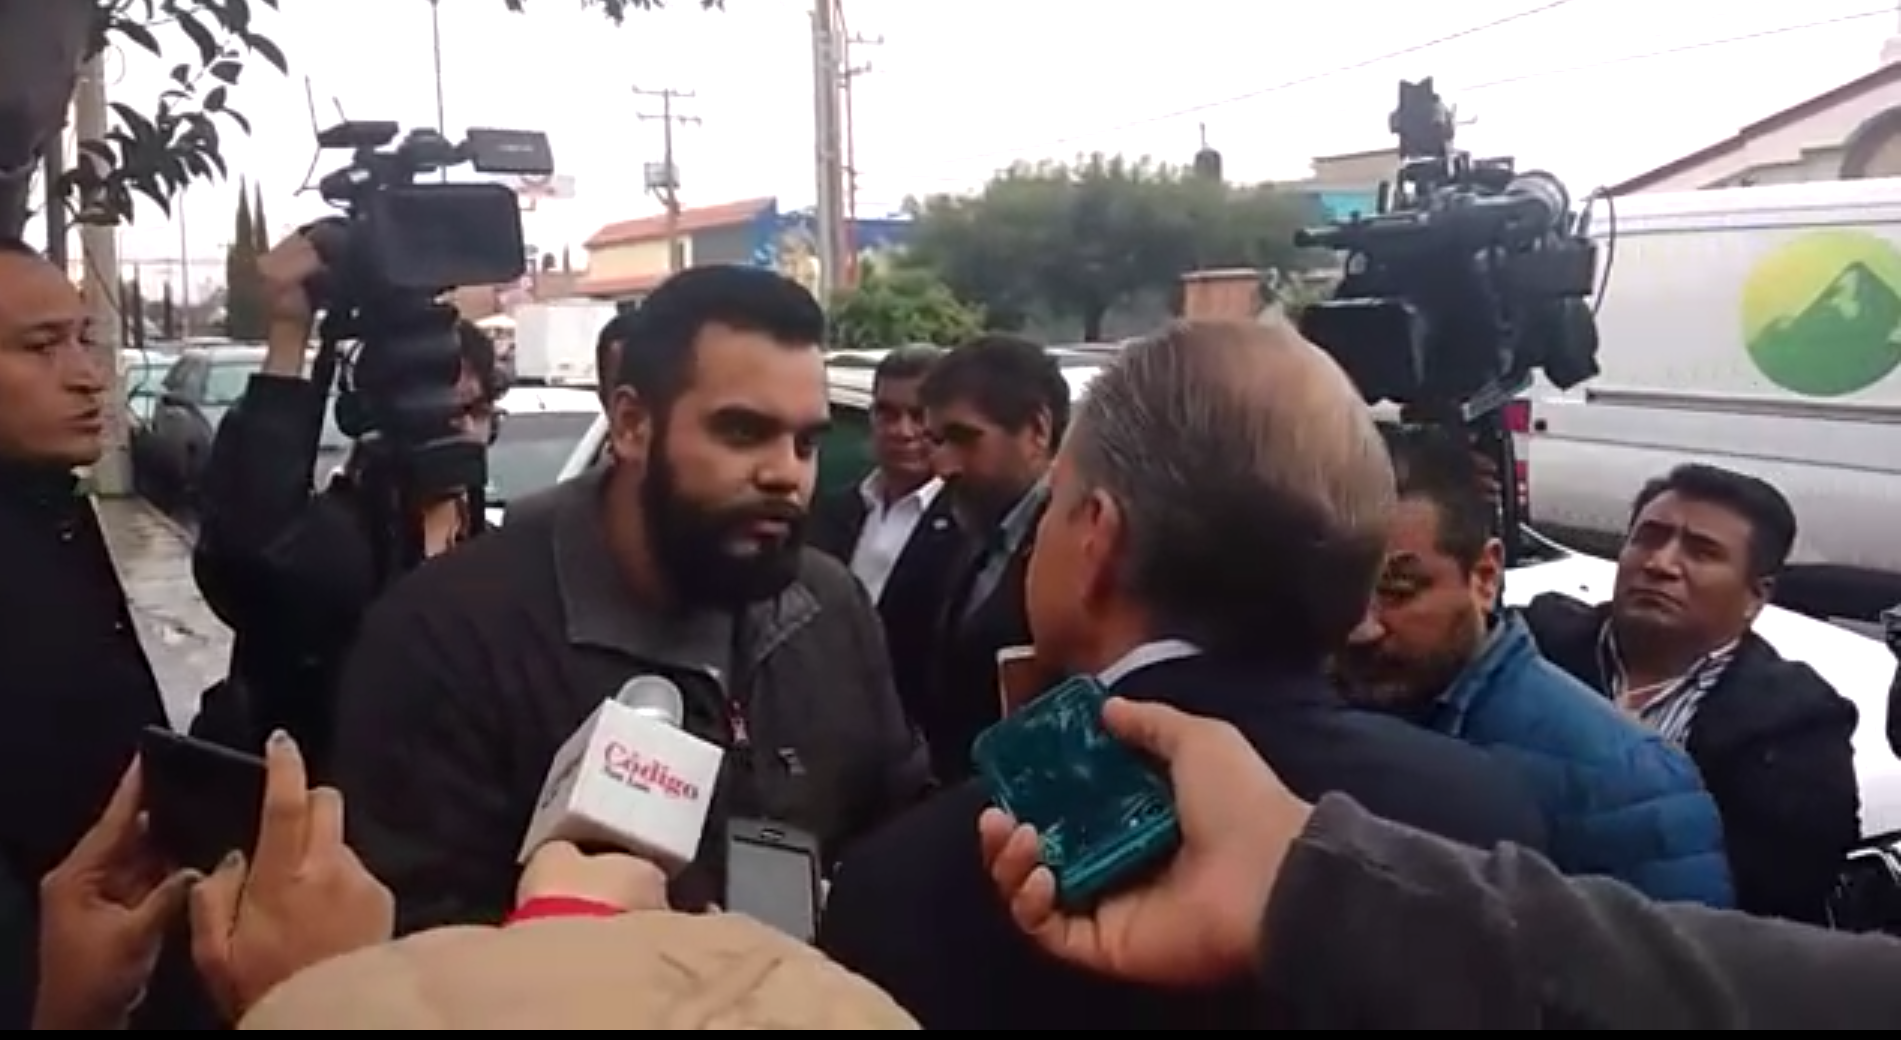  Ciudadano encara a Carreras y le exige seguridad (Video)